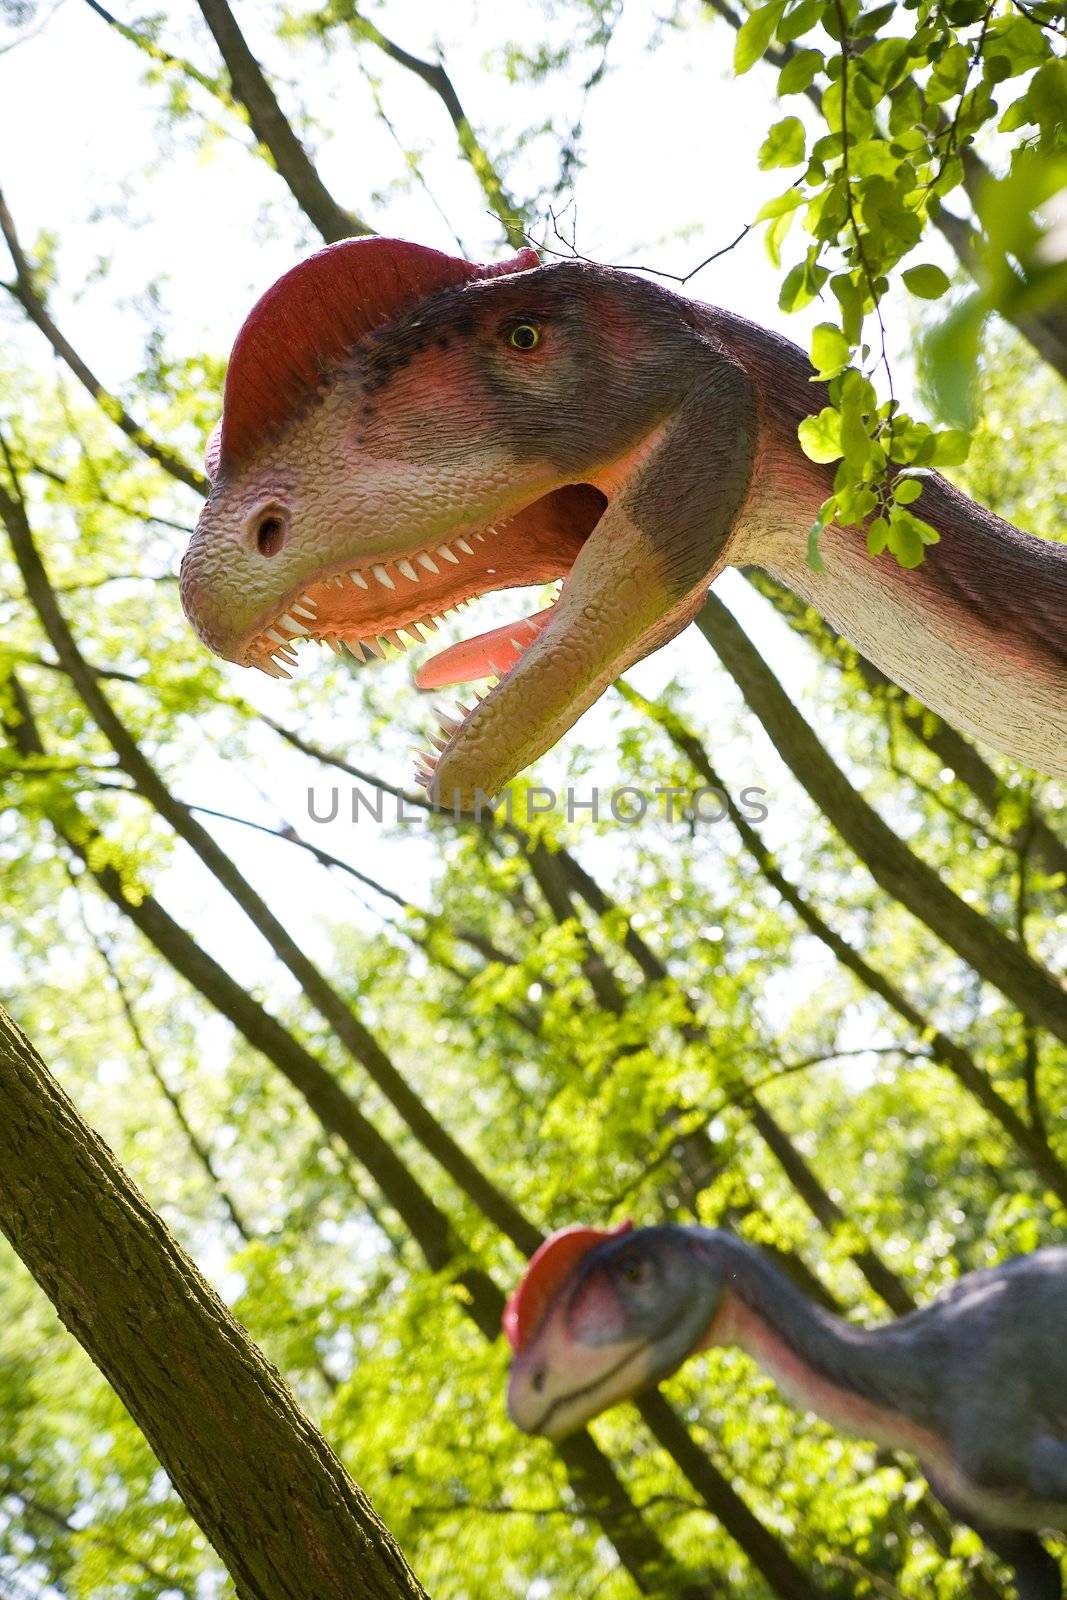 Dilophosaurus wetherilli by furzyk73